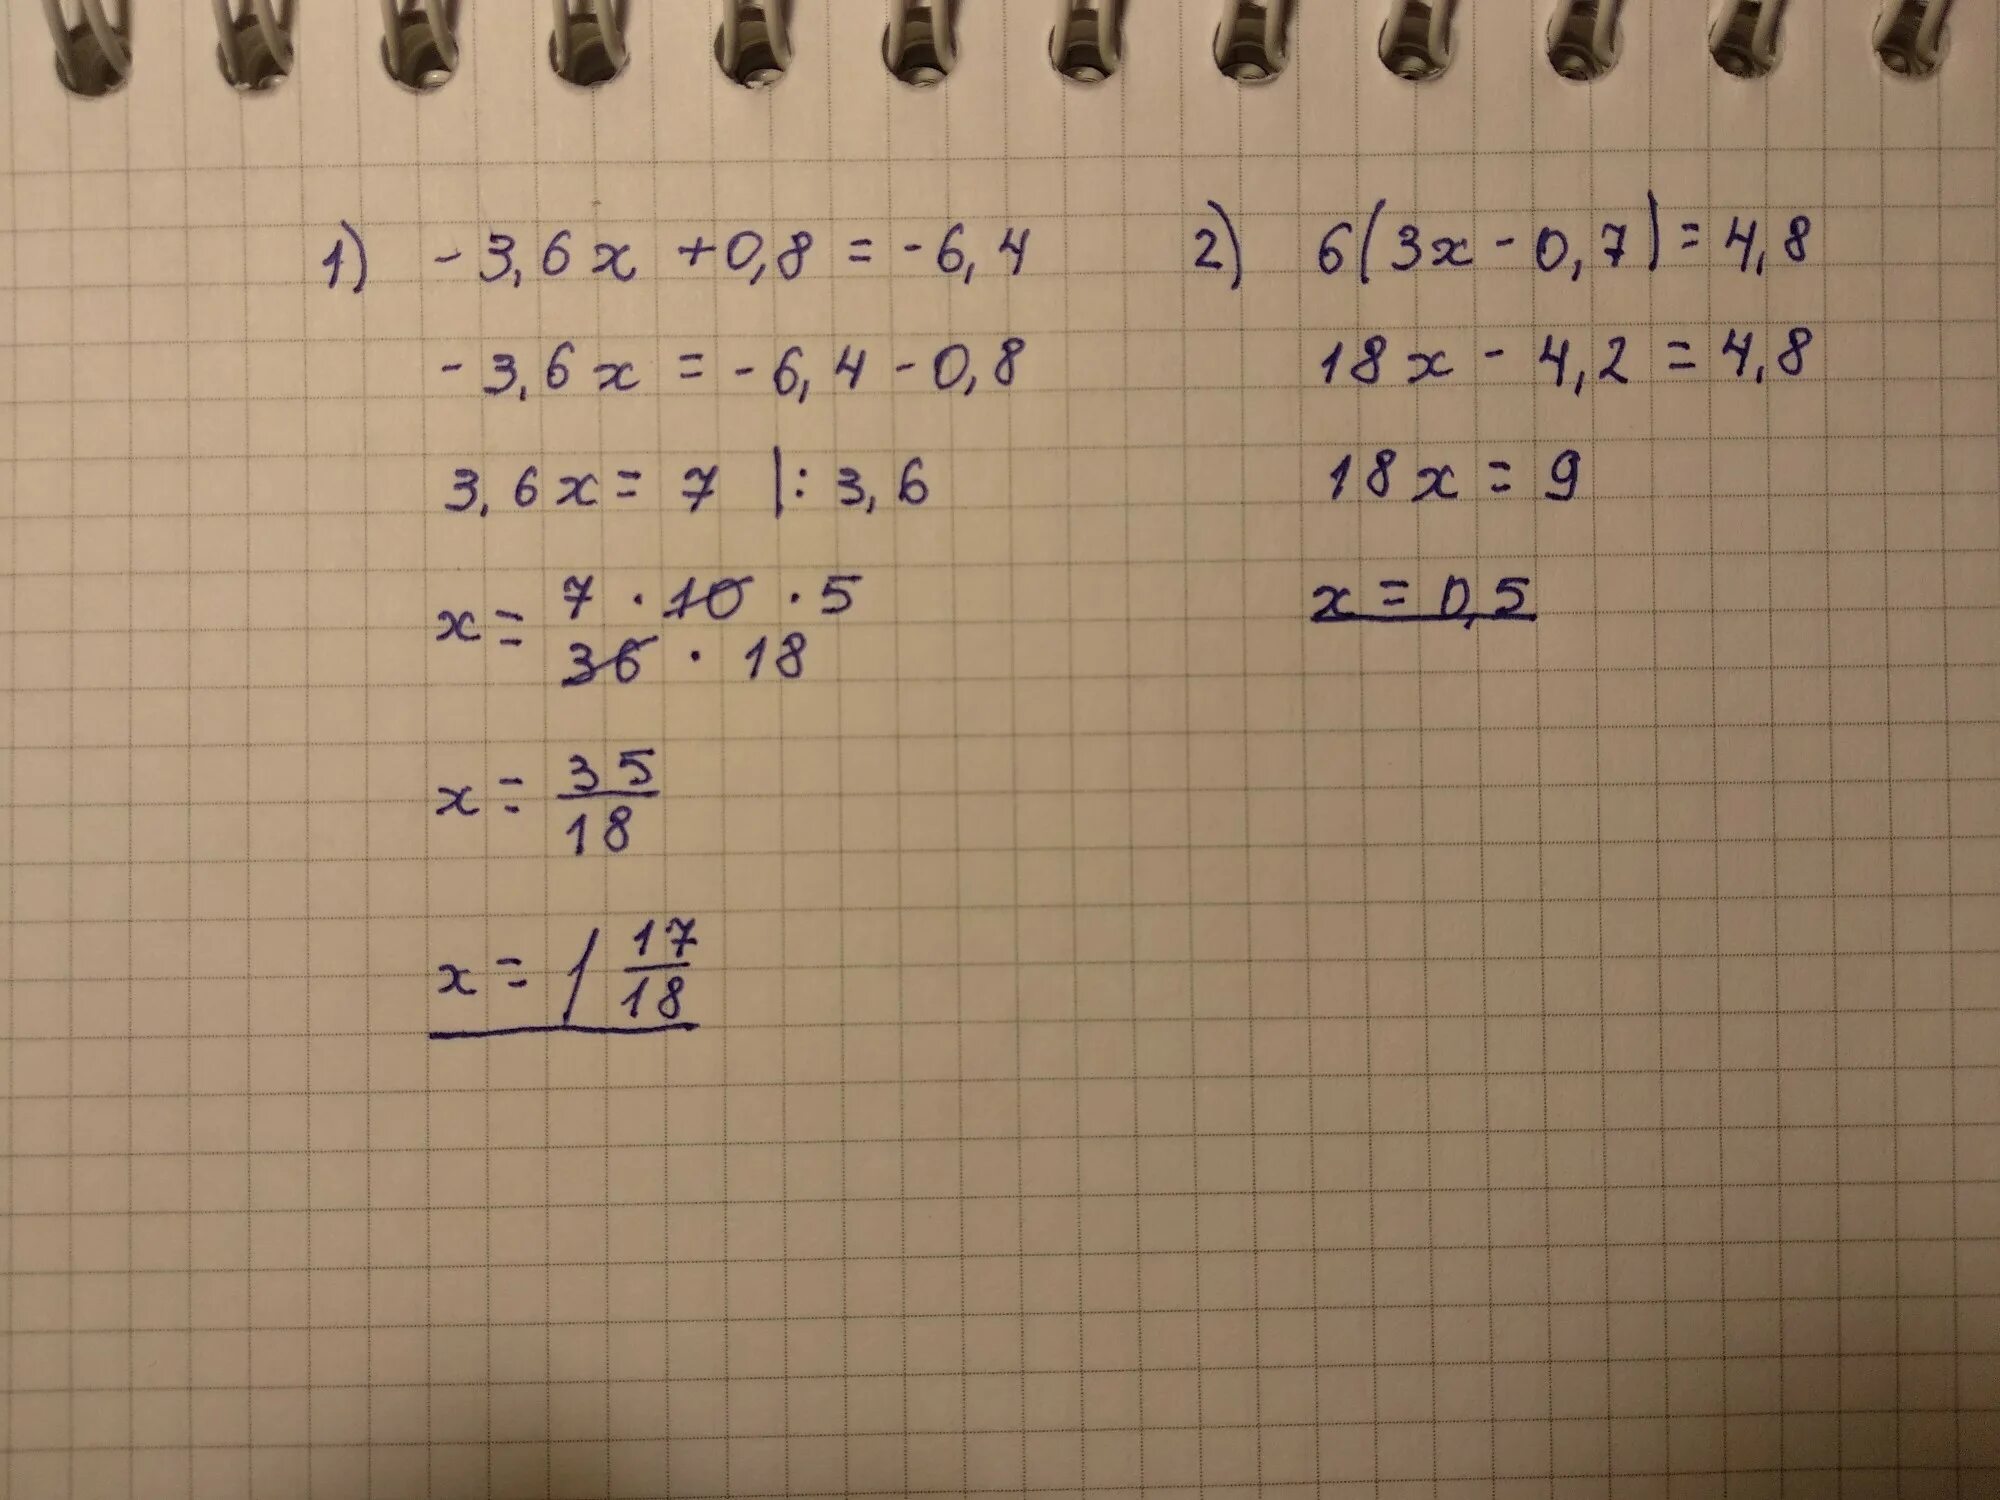 8х 9 3х 8. {8-Х>4 4+6х<1. (Х + 3)(2х – 6)(3х + 4) ≥ 0.. 3х - 6 = 0. 2.6Х3.0Х1.8.